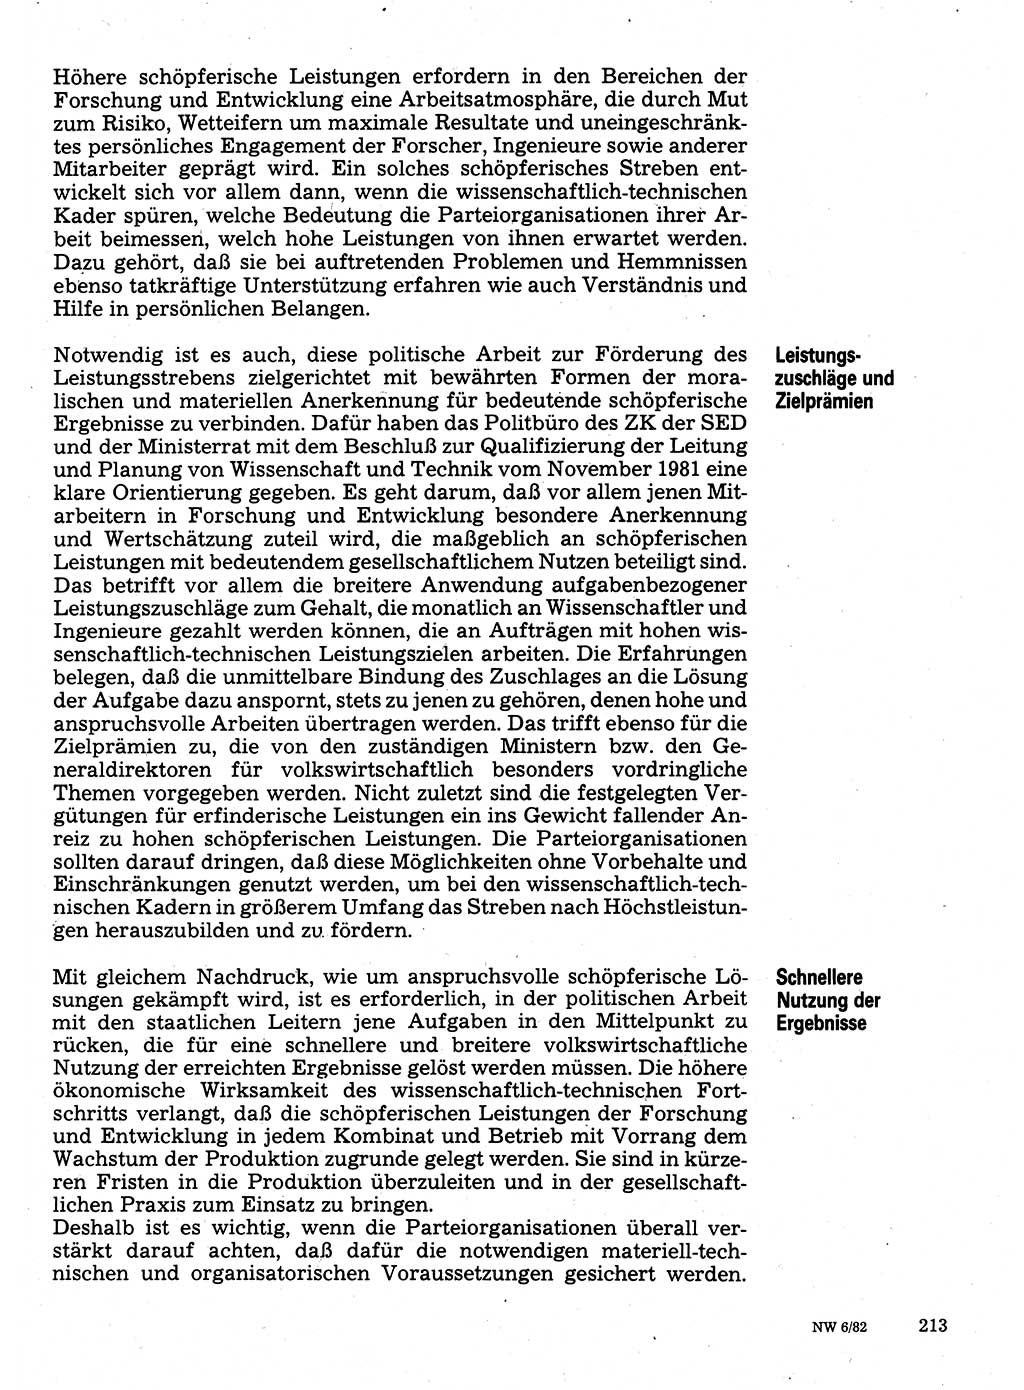 Neuer Weg (NW), Organ des Zentralkomitees (ZK) der SED (Sozialistische Einheitspartei Deutschlands) für Fragen des Parteilebens, 37. Jahrgang [Deutsche Demokratische Republik (DDR)] 1982, Seite 213 (NW ZK SED DDR 1982, S. 213)